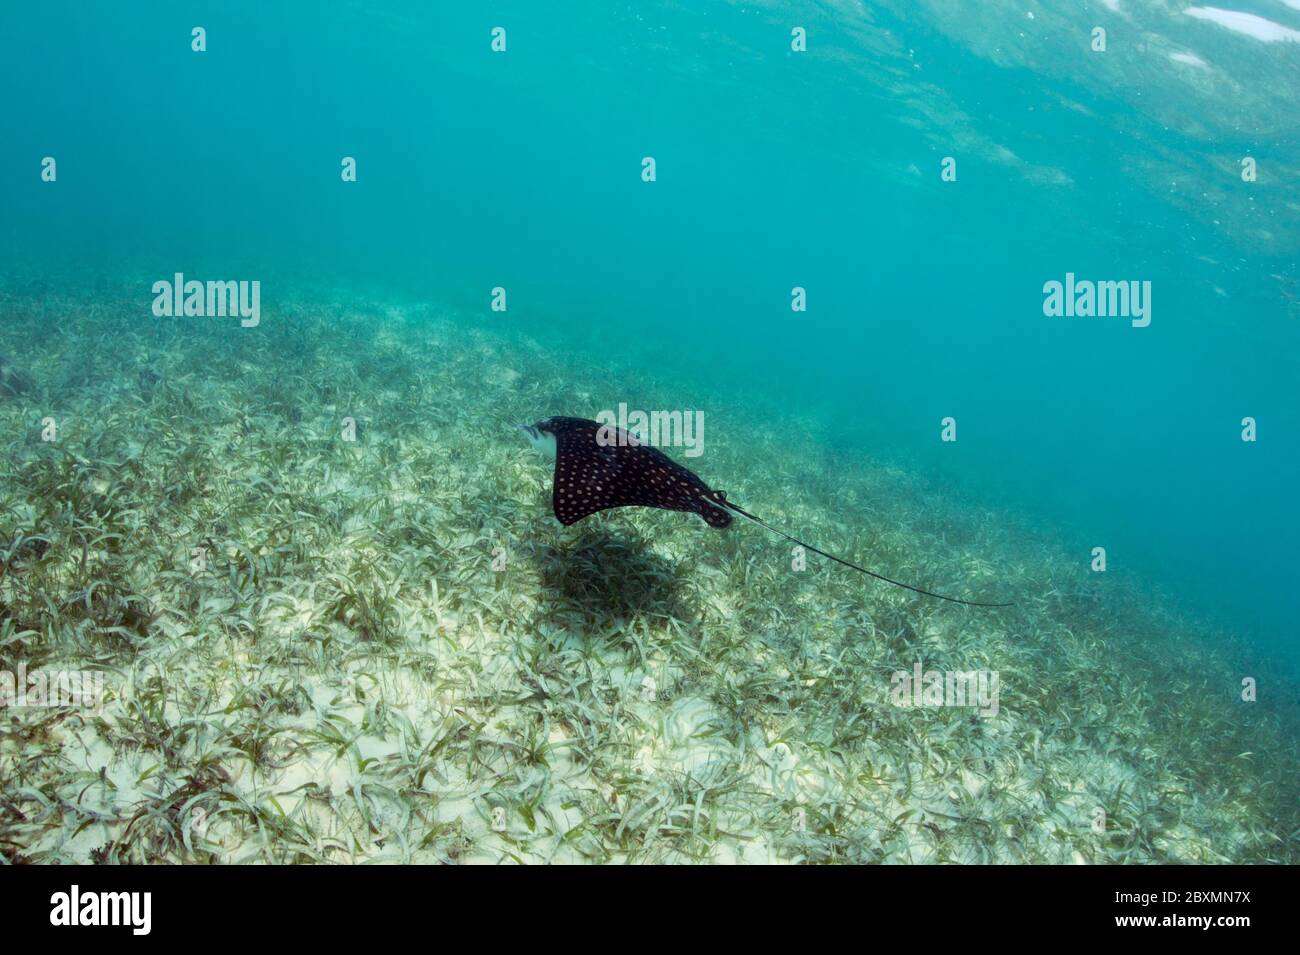 El águila manchada Rayo (Aetobatus narinari) está nadando en la naturaleza sobre un prado de algas marinas en Silky Caye, Belice. Foto de stock